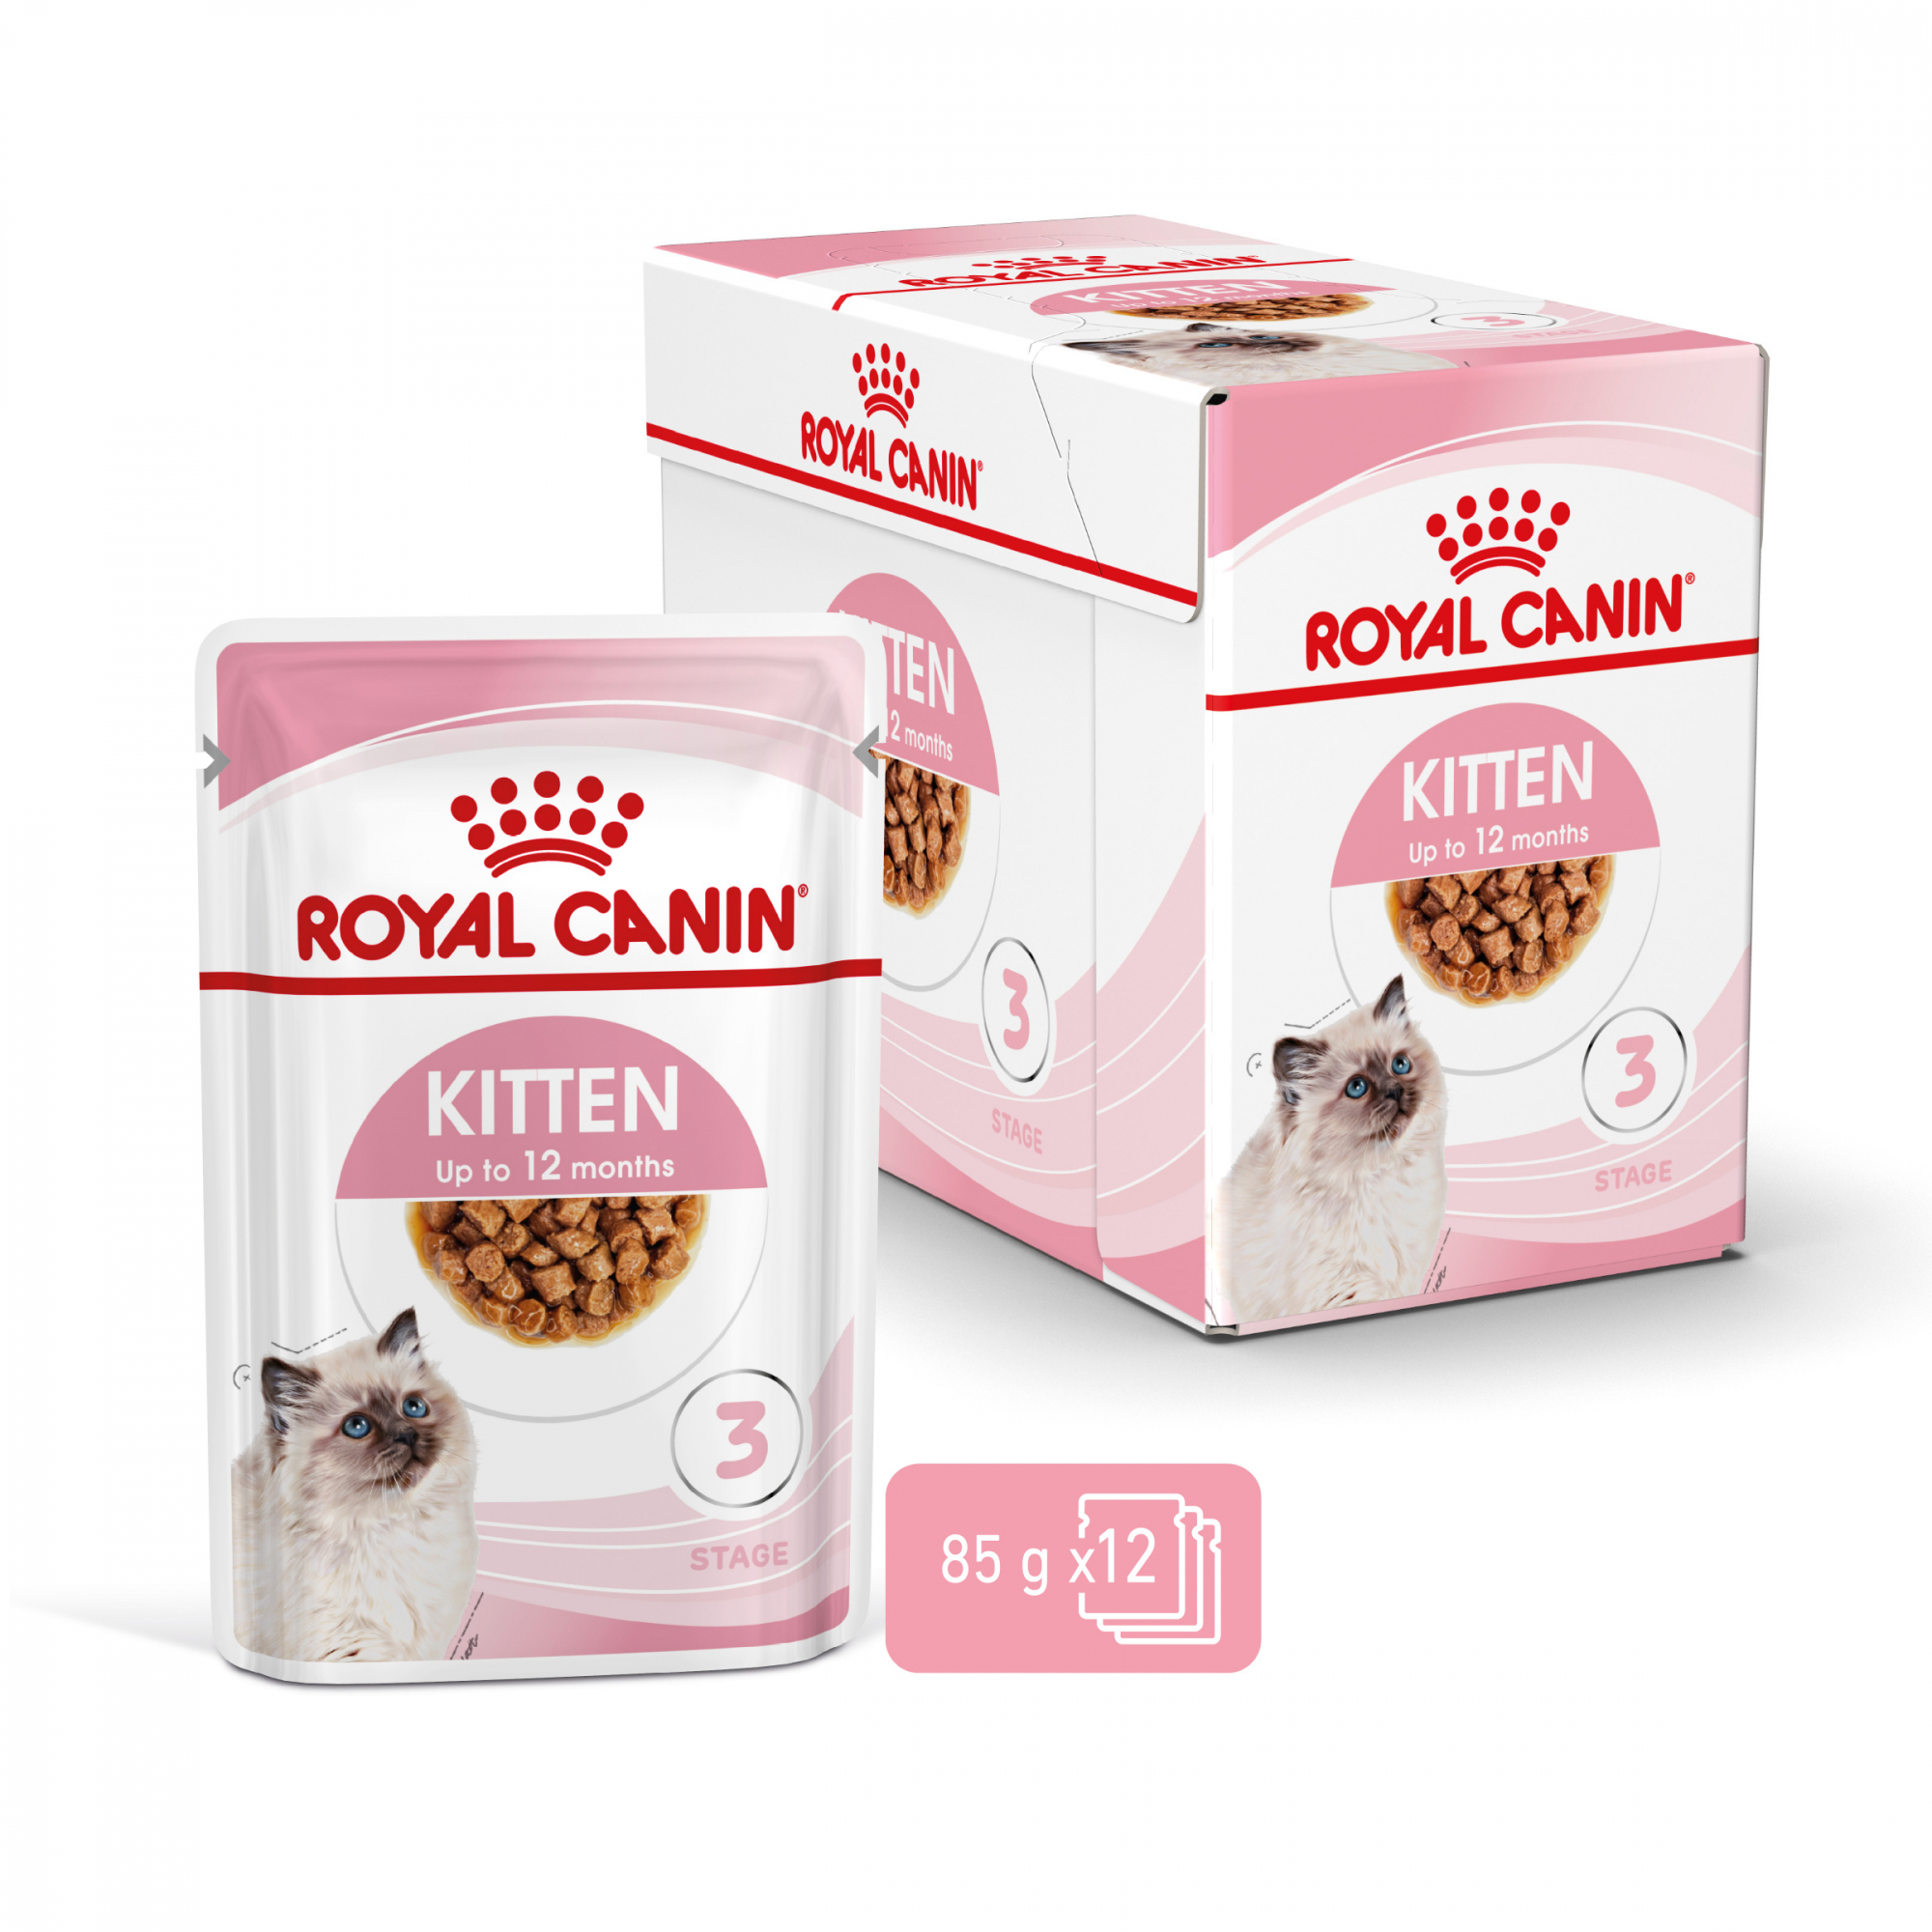 Royal Canin Instinctive Kitten Nassfutter in Sauce für Katzen